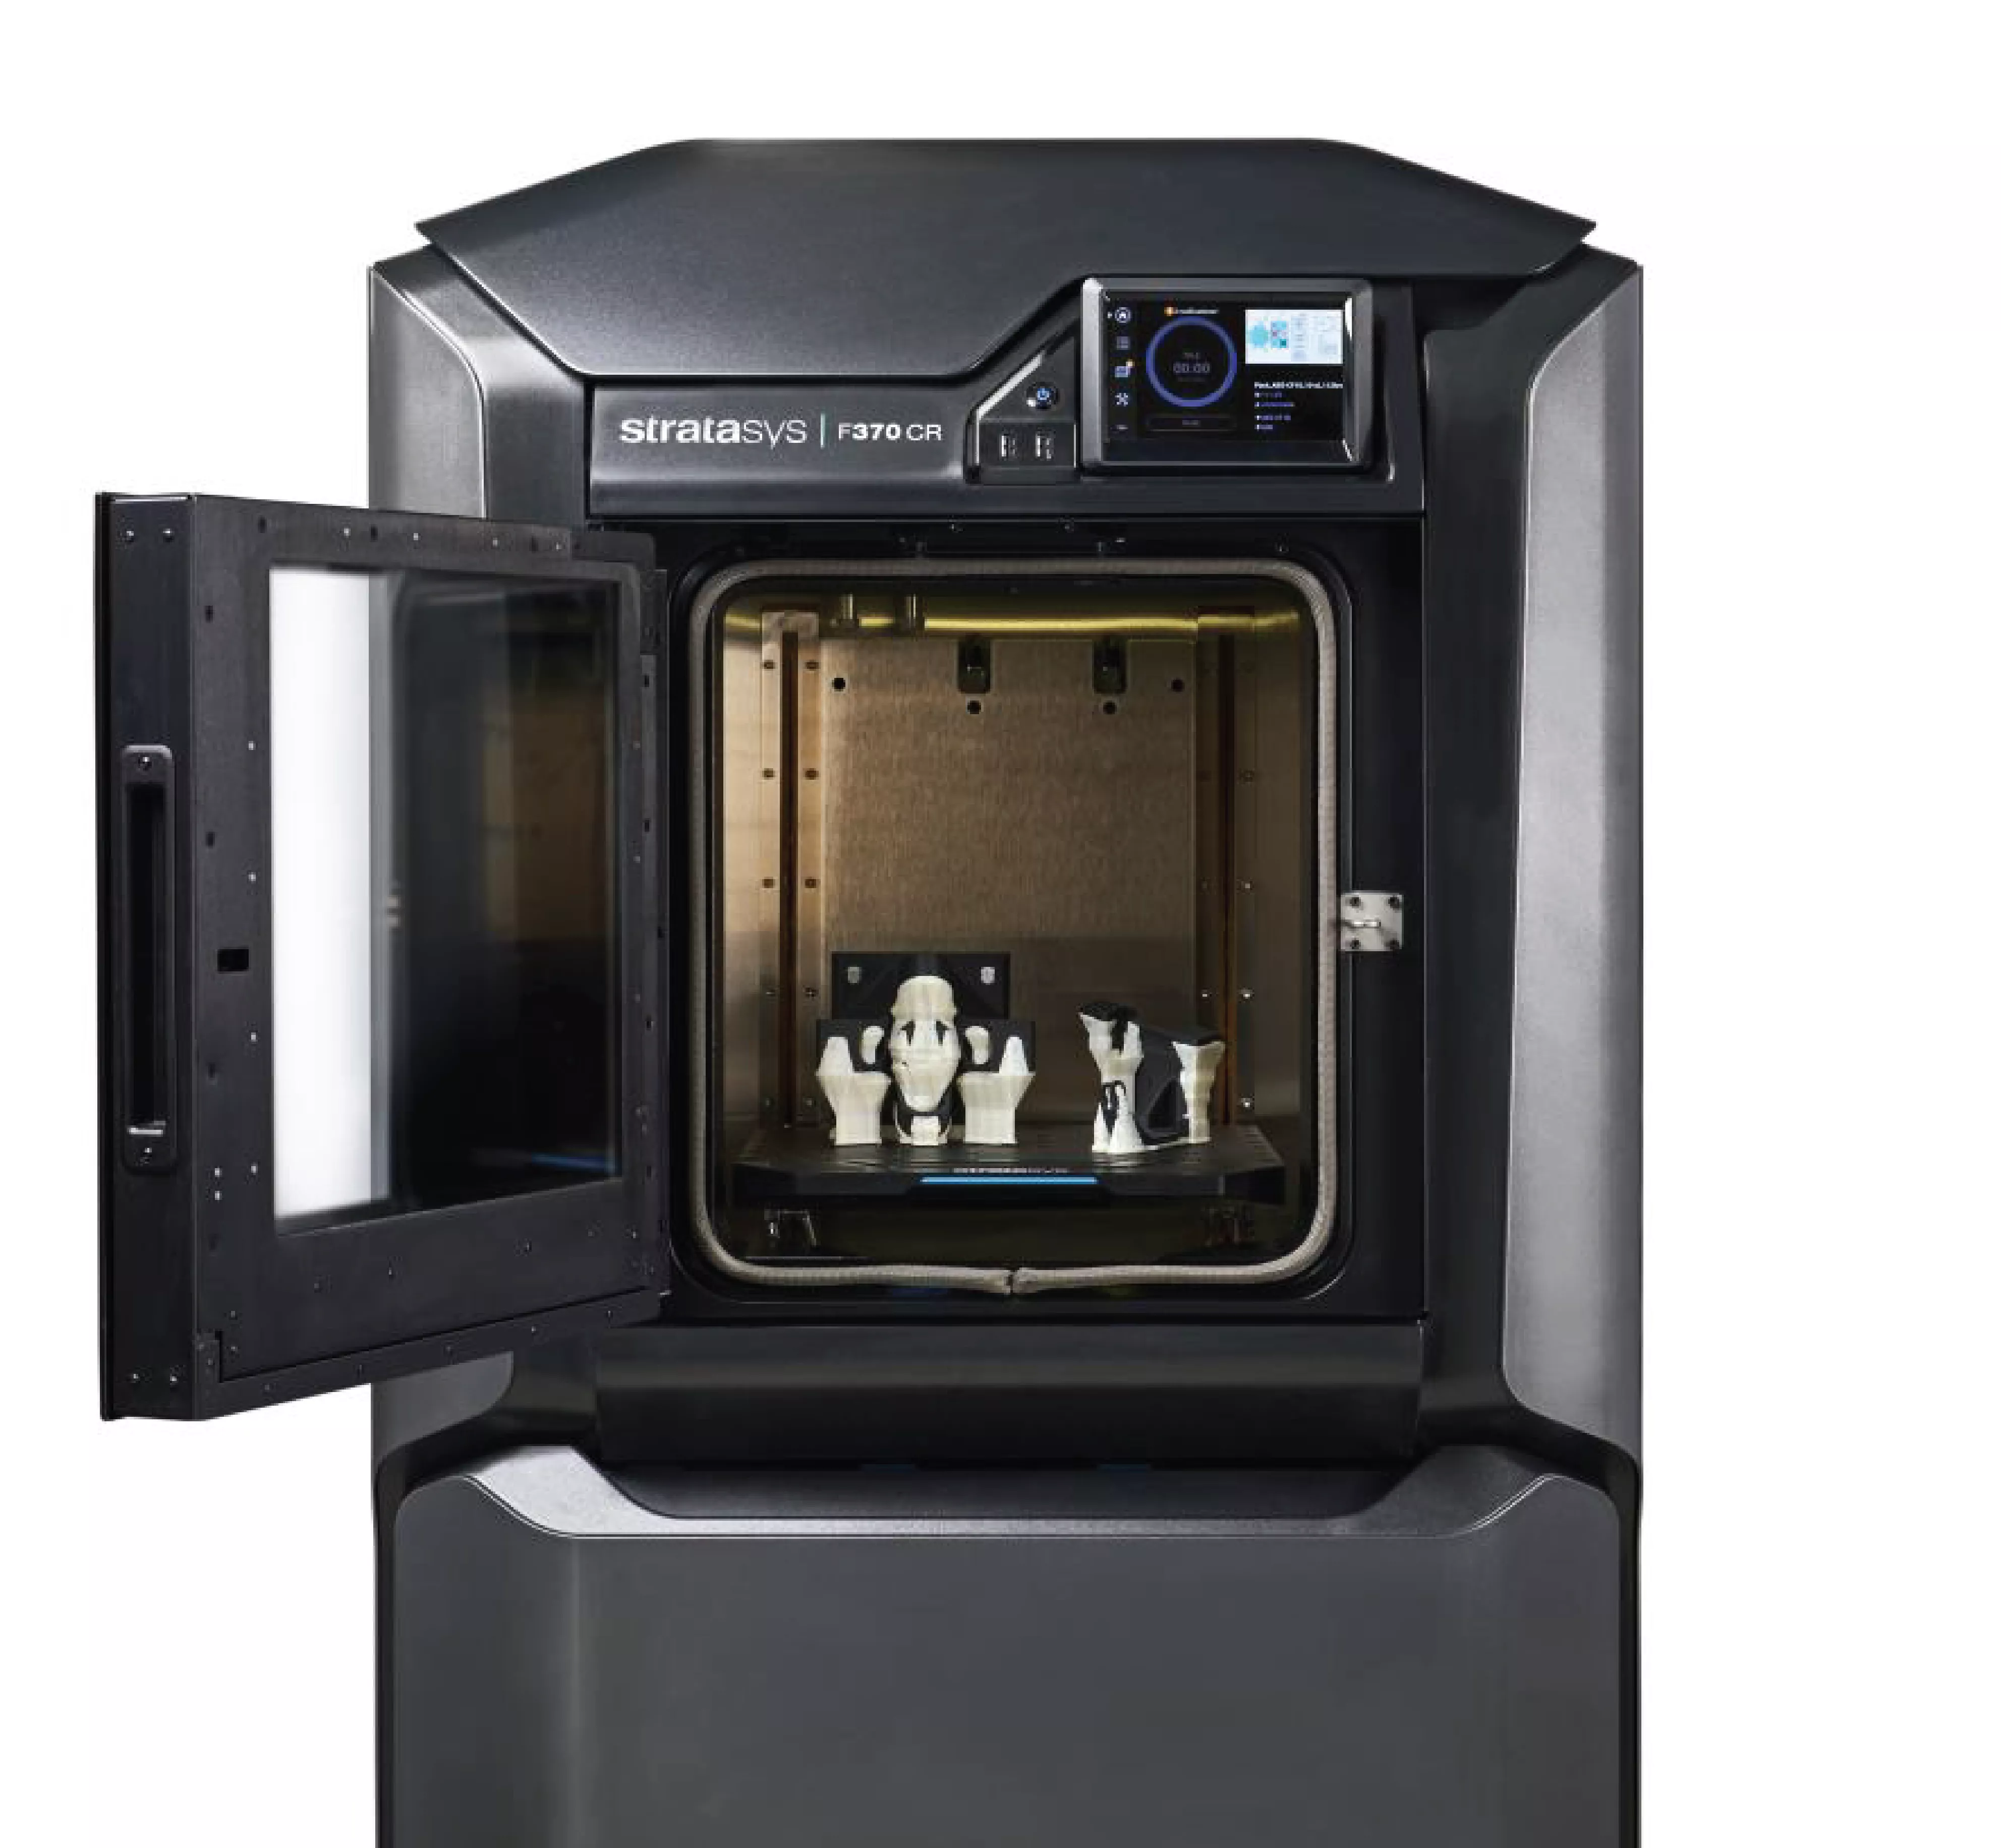 Open Stratasys F370 CR 3D Printer.